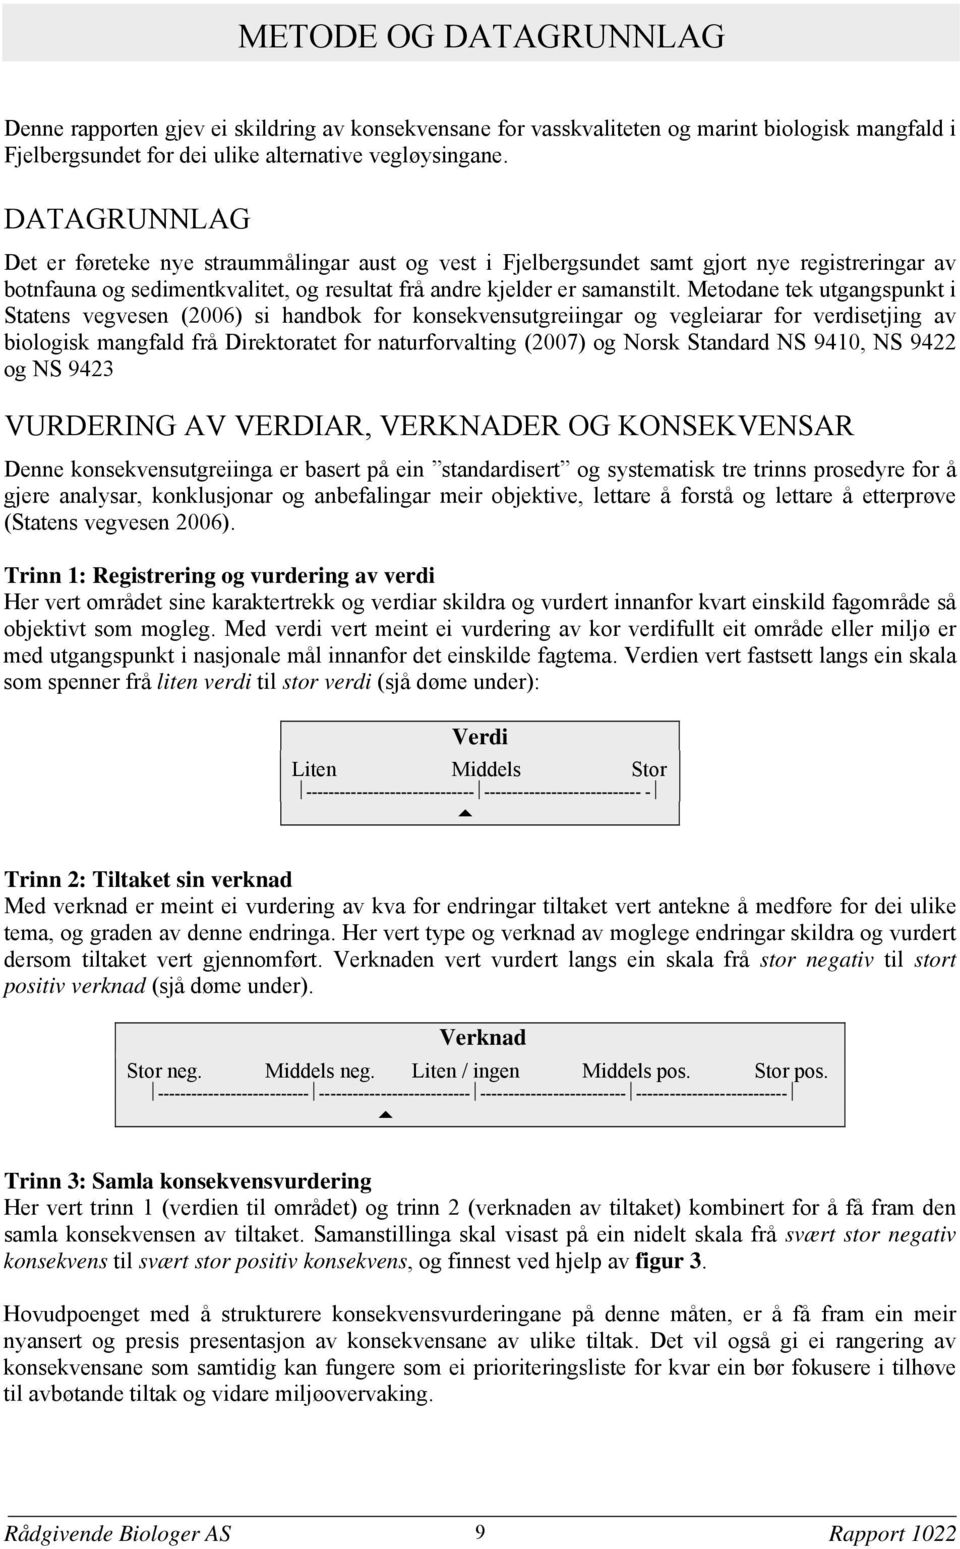 Metodane tek utgangspunkt i Statens vegvesen (2006) si handbok for konsekvensutgreiingar og vegleiarar for verdisetjing av biologisk mangfald frå Direktoratet for naturforvalting (2007) og Norsk